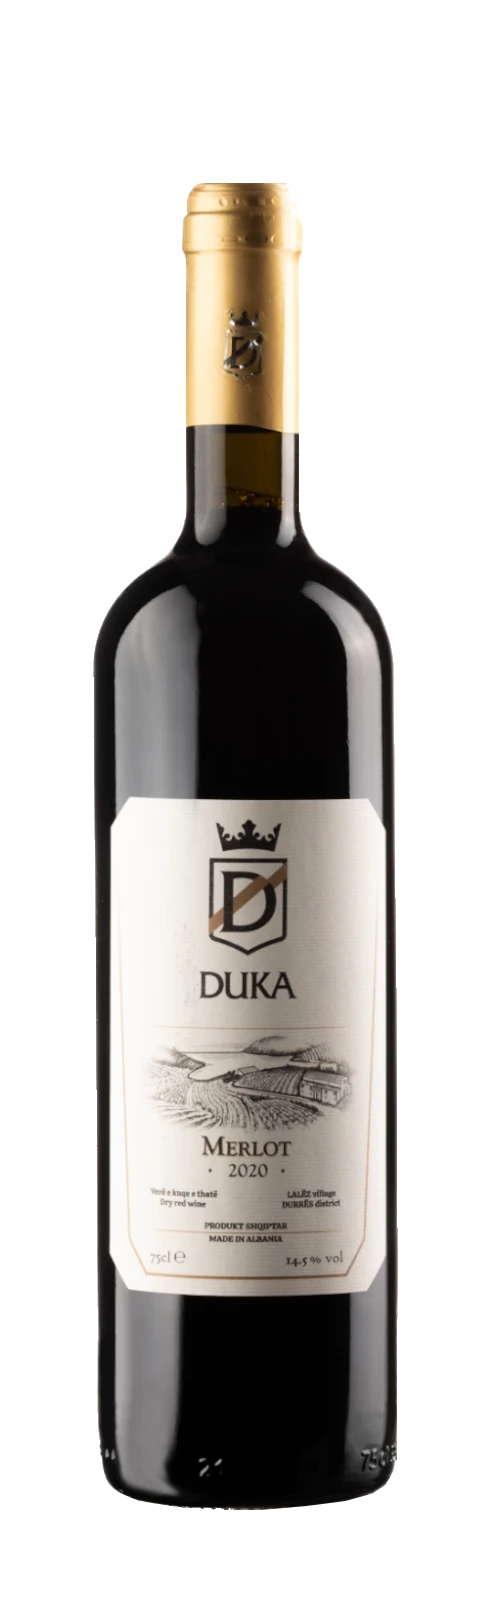 Merlot 2020 - 14,5% vol. - DUKA Winery